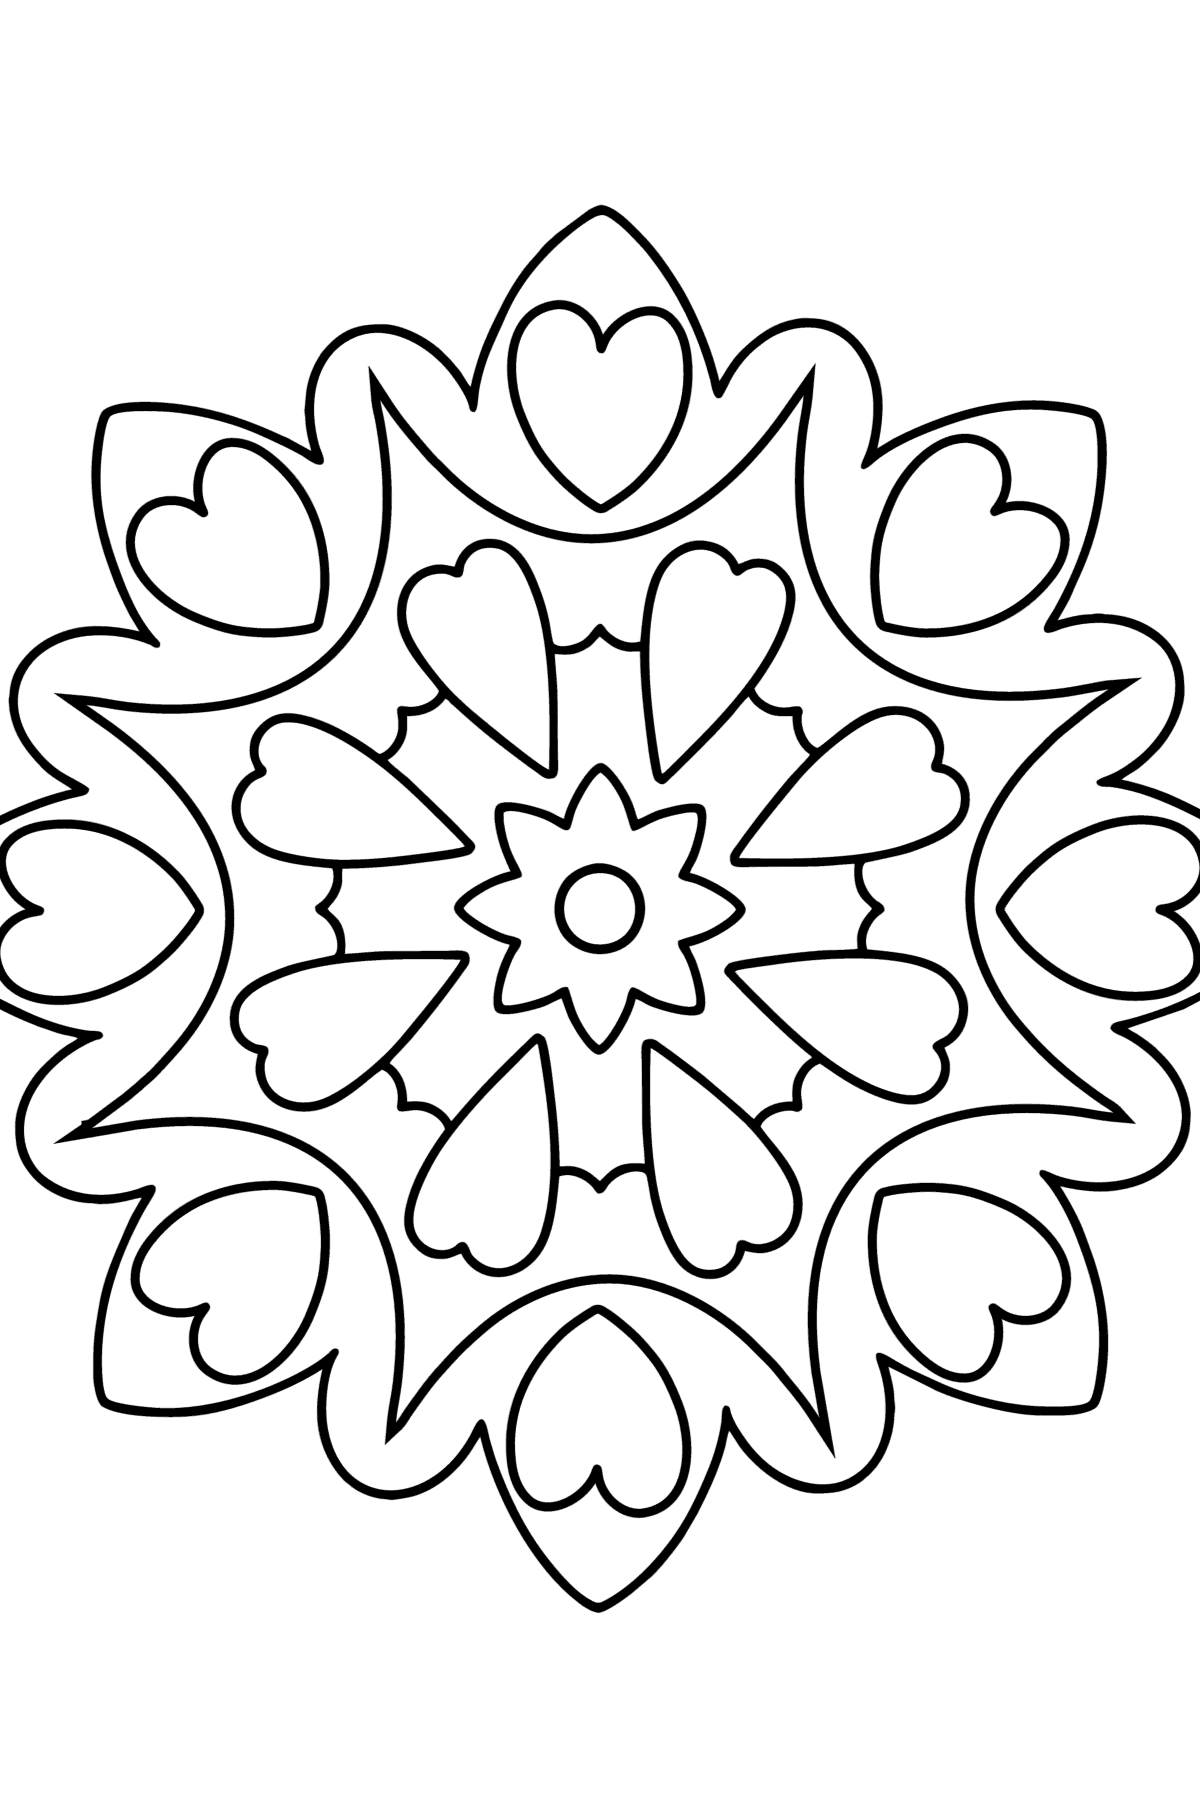 Desenho para colorir Mandala - 21 elementos - Imagens para Colorir para Crianças